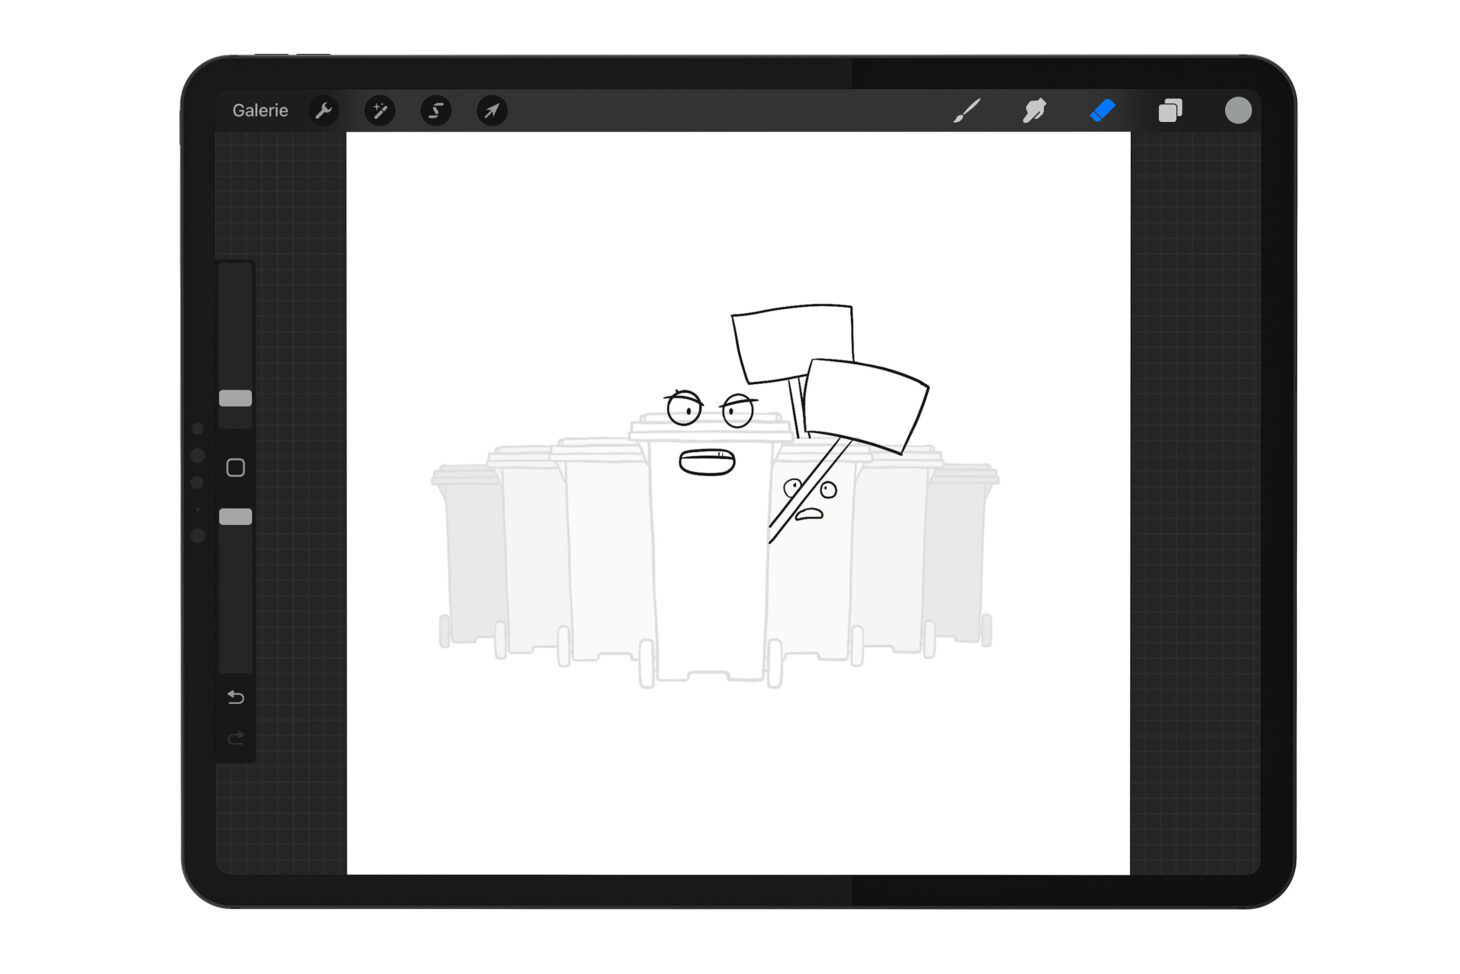 Mockup iPad: Aufstellung von 7 Mülltonnen, Gesichter und Schilder werden gezeichnet